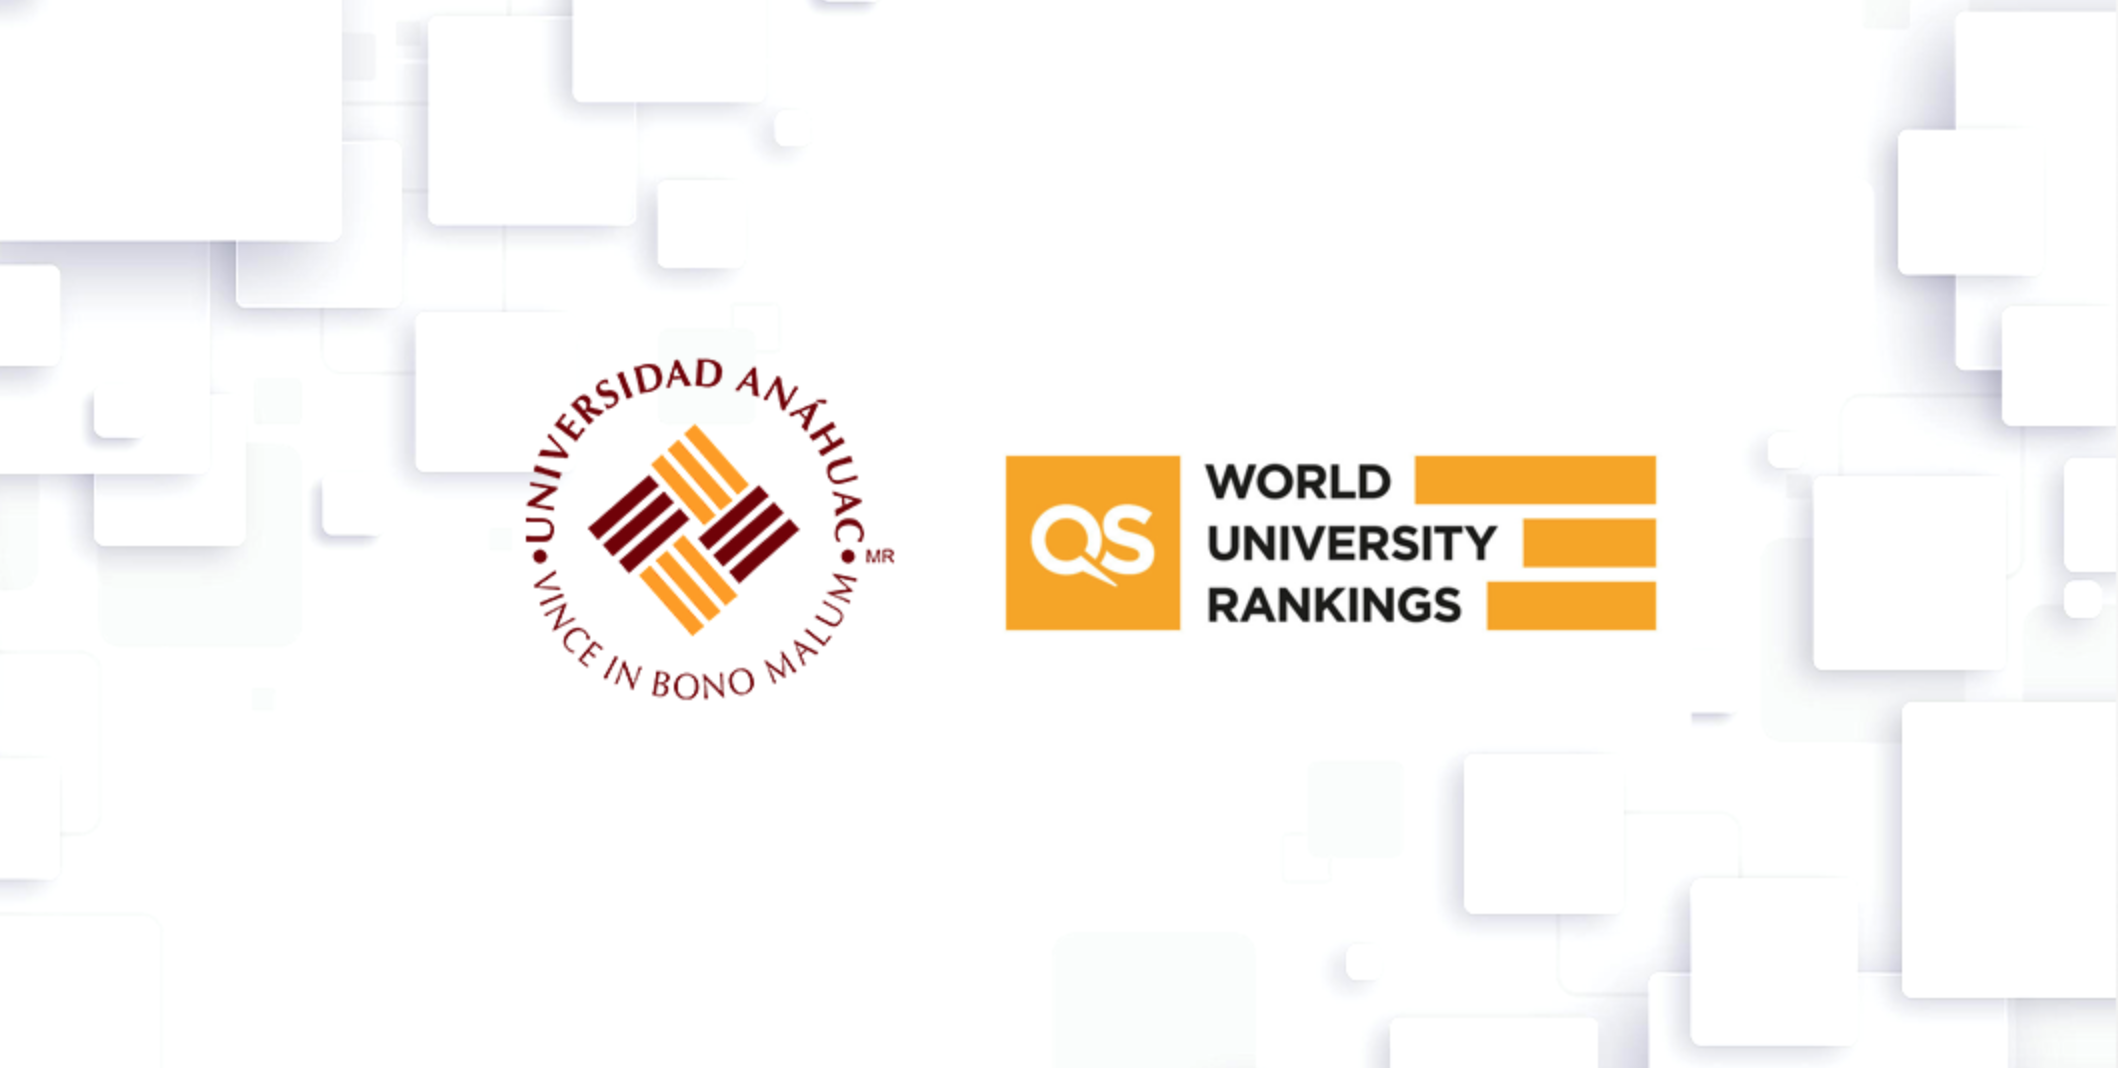 La Universidad Anáhuac se posiciona dentro del ranking QS 2022 dentro de las tres mejores universidades privadas de México